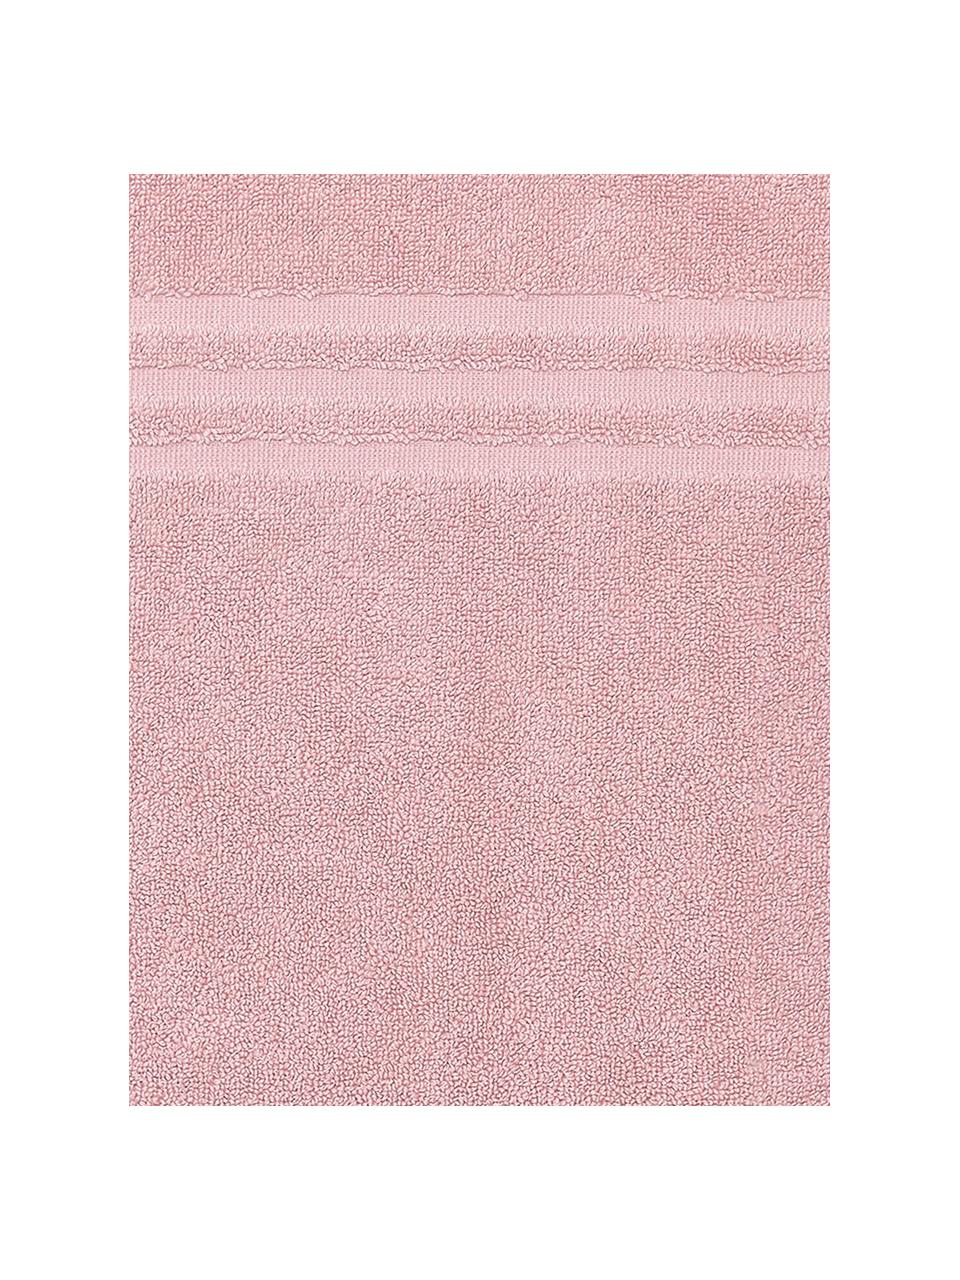 Dywanik łazienkowy Gentle, 100% bawełna, Jasny różowy, S 50 x D 80 cm